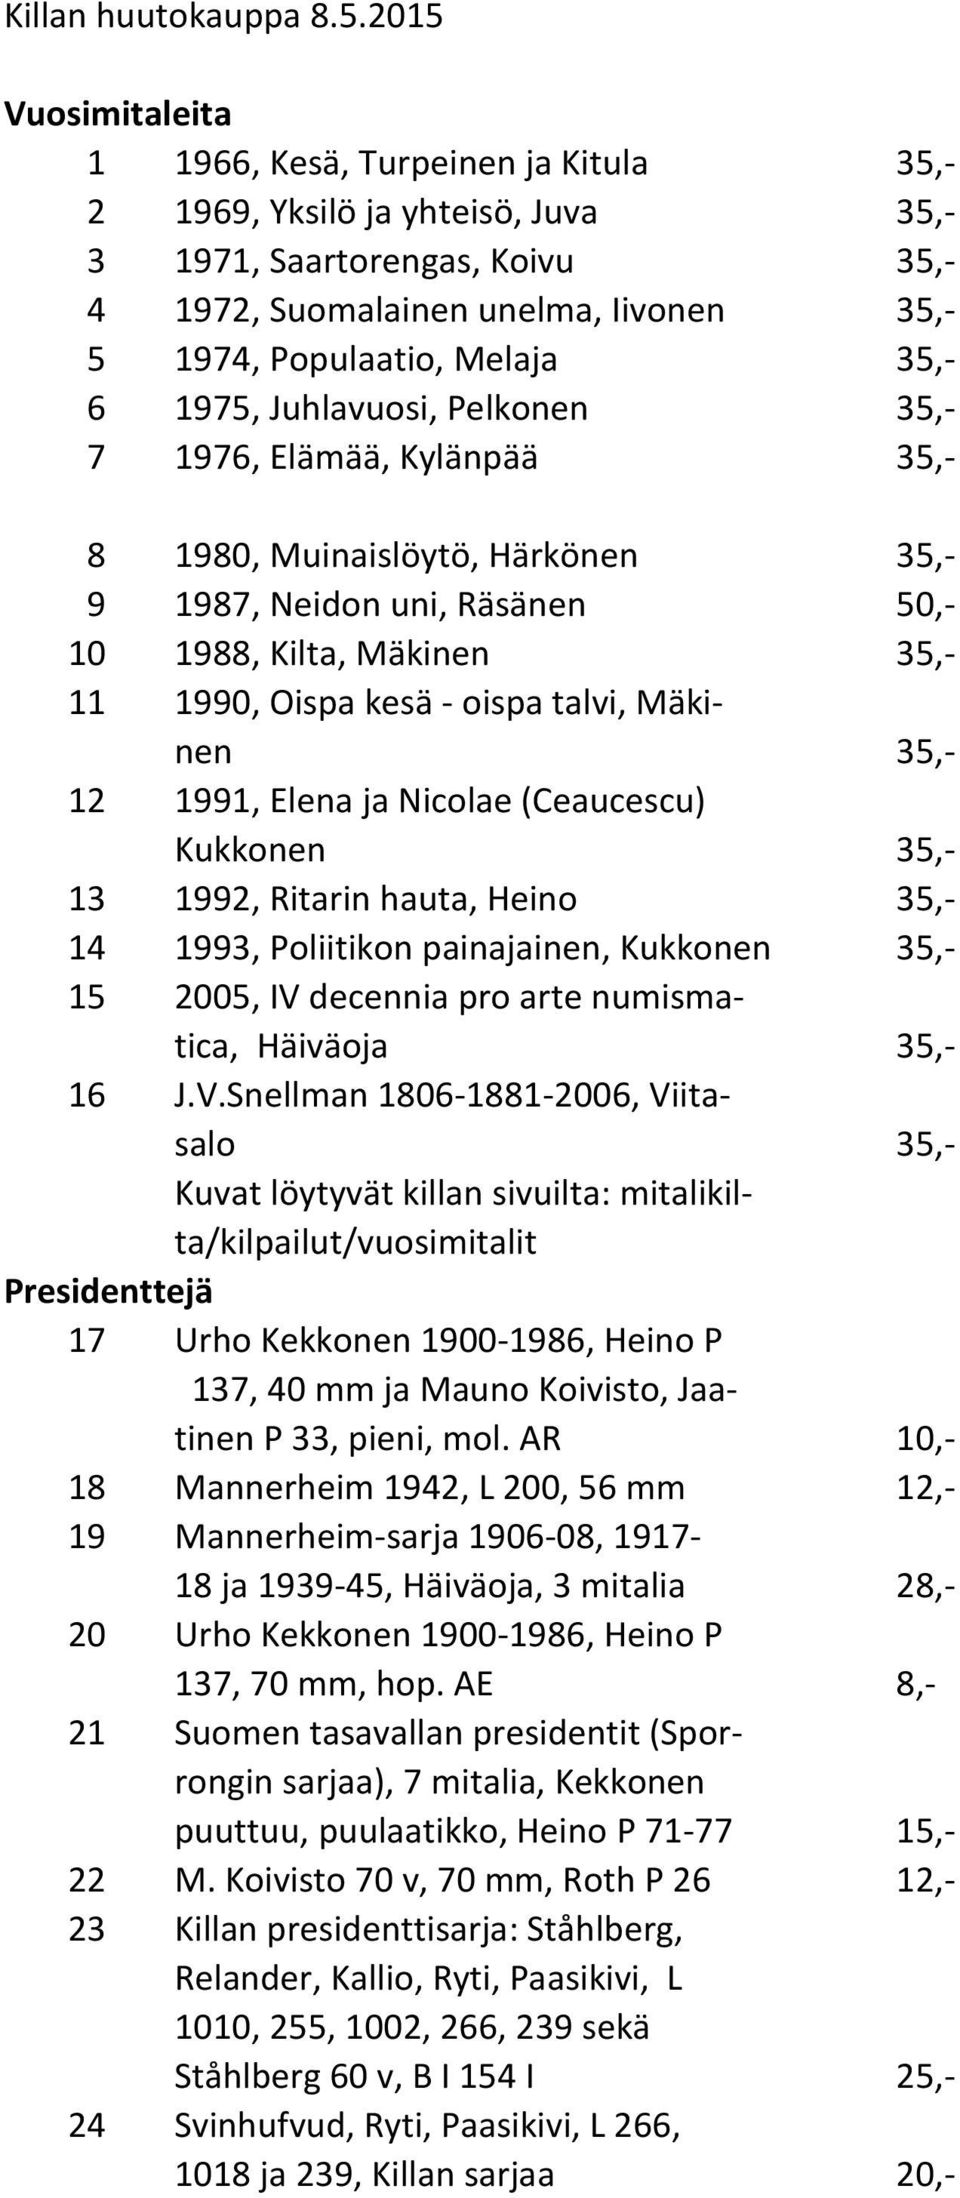 35,- 6 1975, Juhlavuosi, Pelkonen 35,- 7 1976, Elämää, Kylänpää 35,- 8 1980, Muinaislöytö, Härkönen 35,- 9 1987, Neidon uni, Räsänen 50,- 10 1988, Kilta, Mäkinen 35,- 11 1990, Oispa kesä - oispa